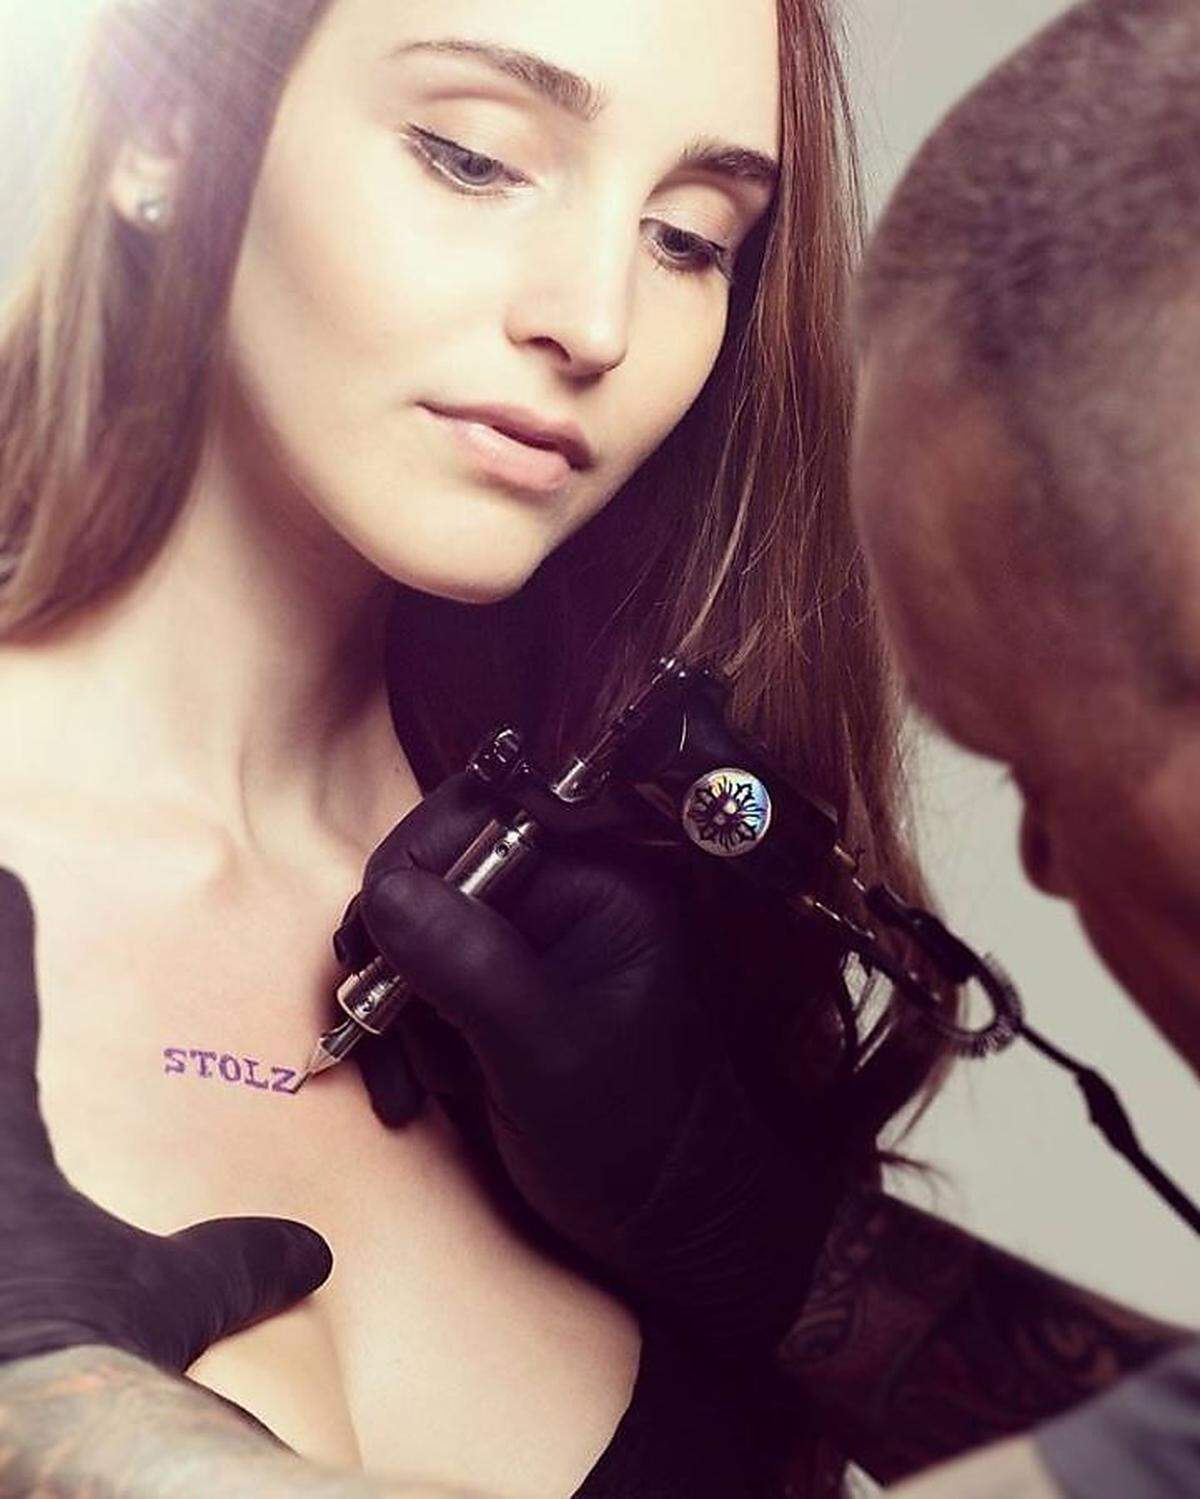 Mit diesem Foto kündigte die Linzer FPÖ ihre neue Sommer-Kampagne an: Wer sich fragt, warum einer jungen Frau das Wort "Stolz" auf die Brust tätowiert wird, erfuhr die Antwort darauf nur wenige Tage später ...